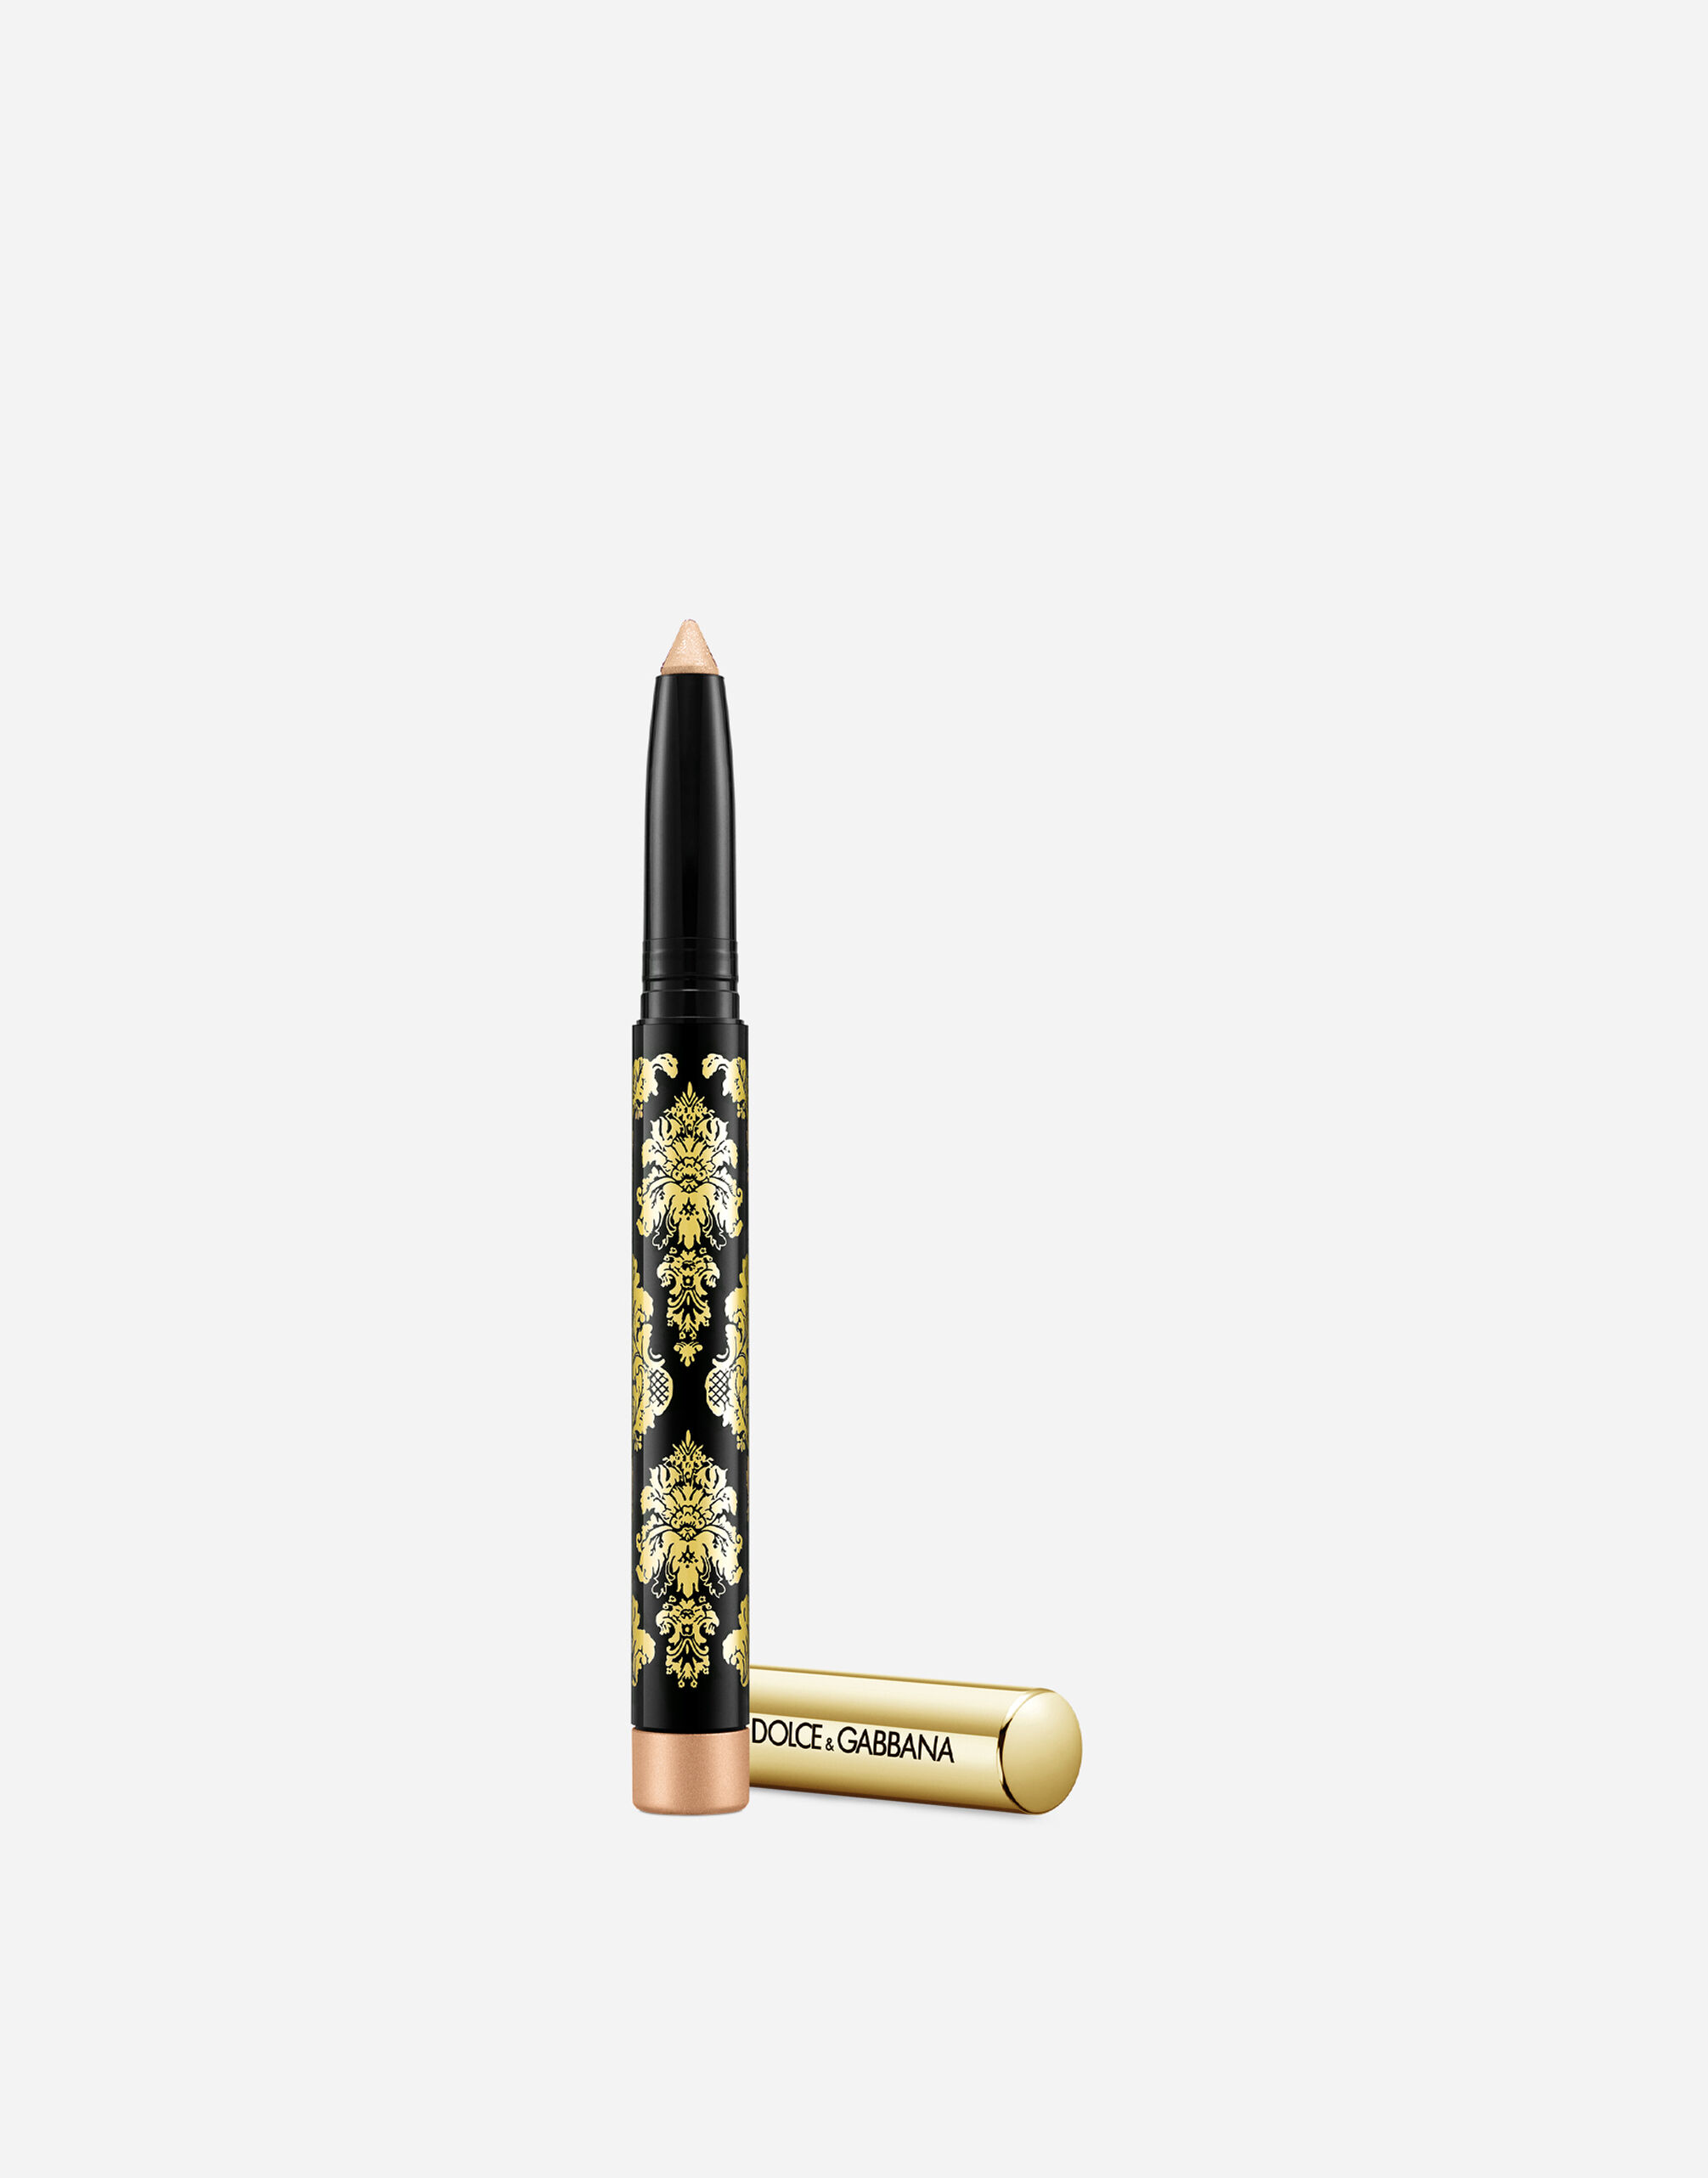 Тени-карандаш для глаз Dolce & Gabbana Intenseyes кремовые, №7 Shimmer, 1,4 г свет и тени в моей жизни 1864 1933 менделеев п